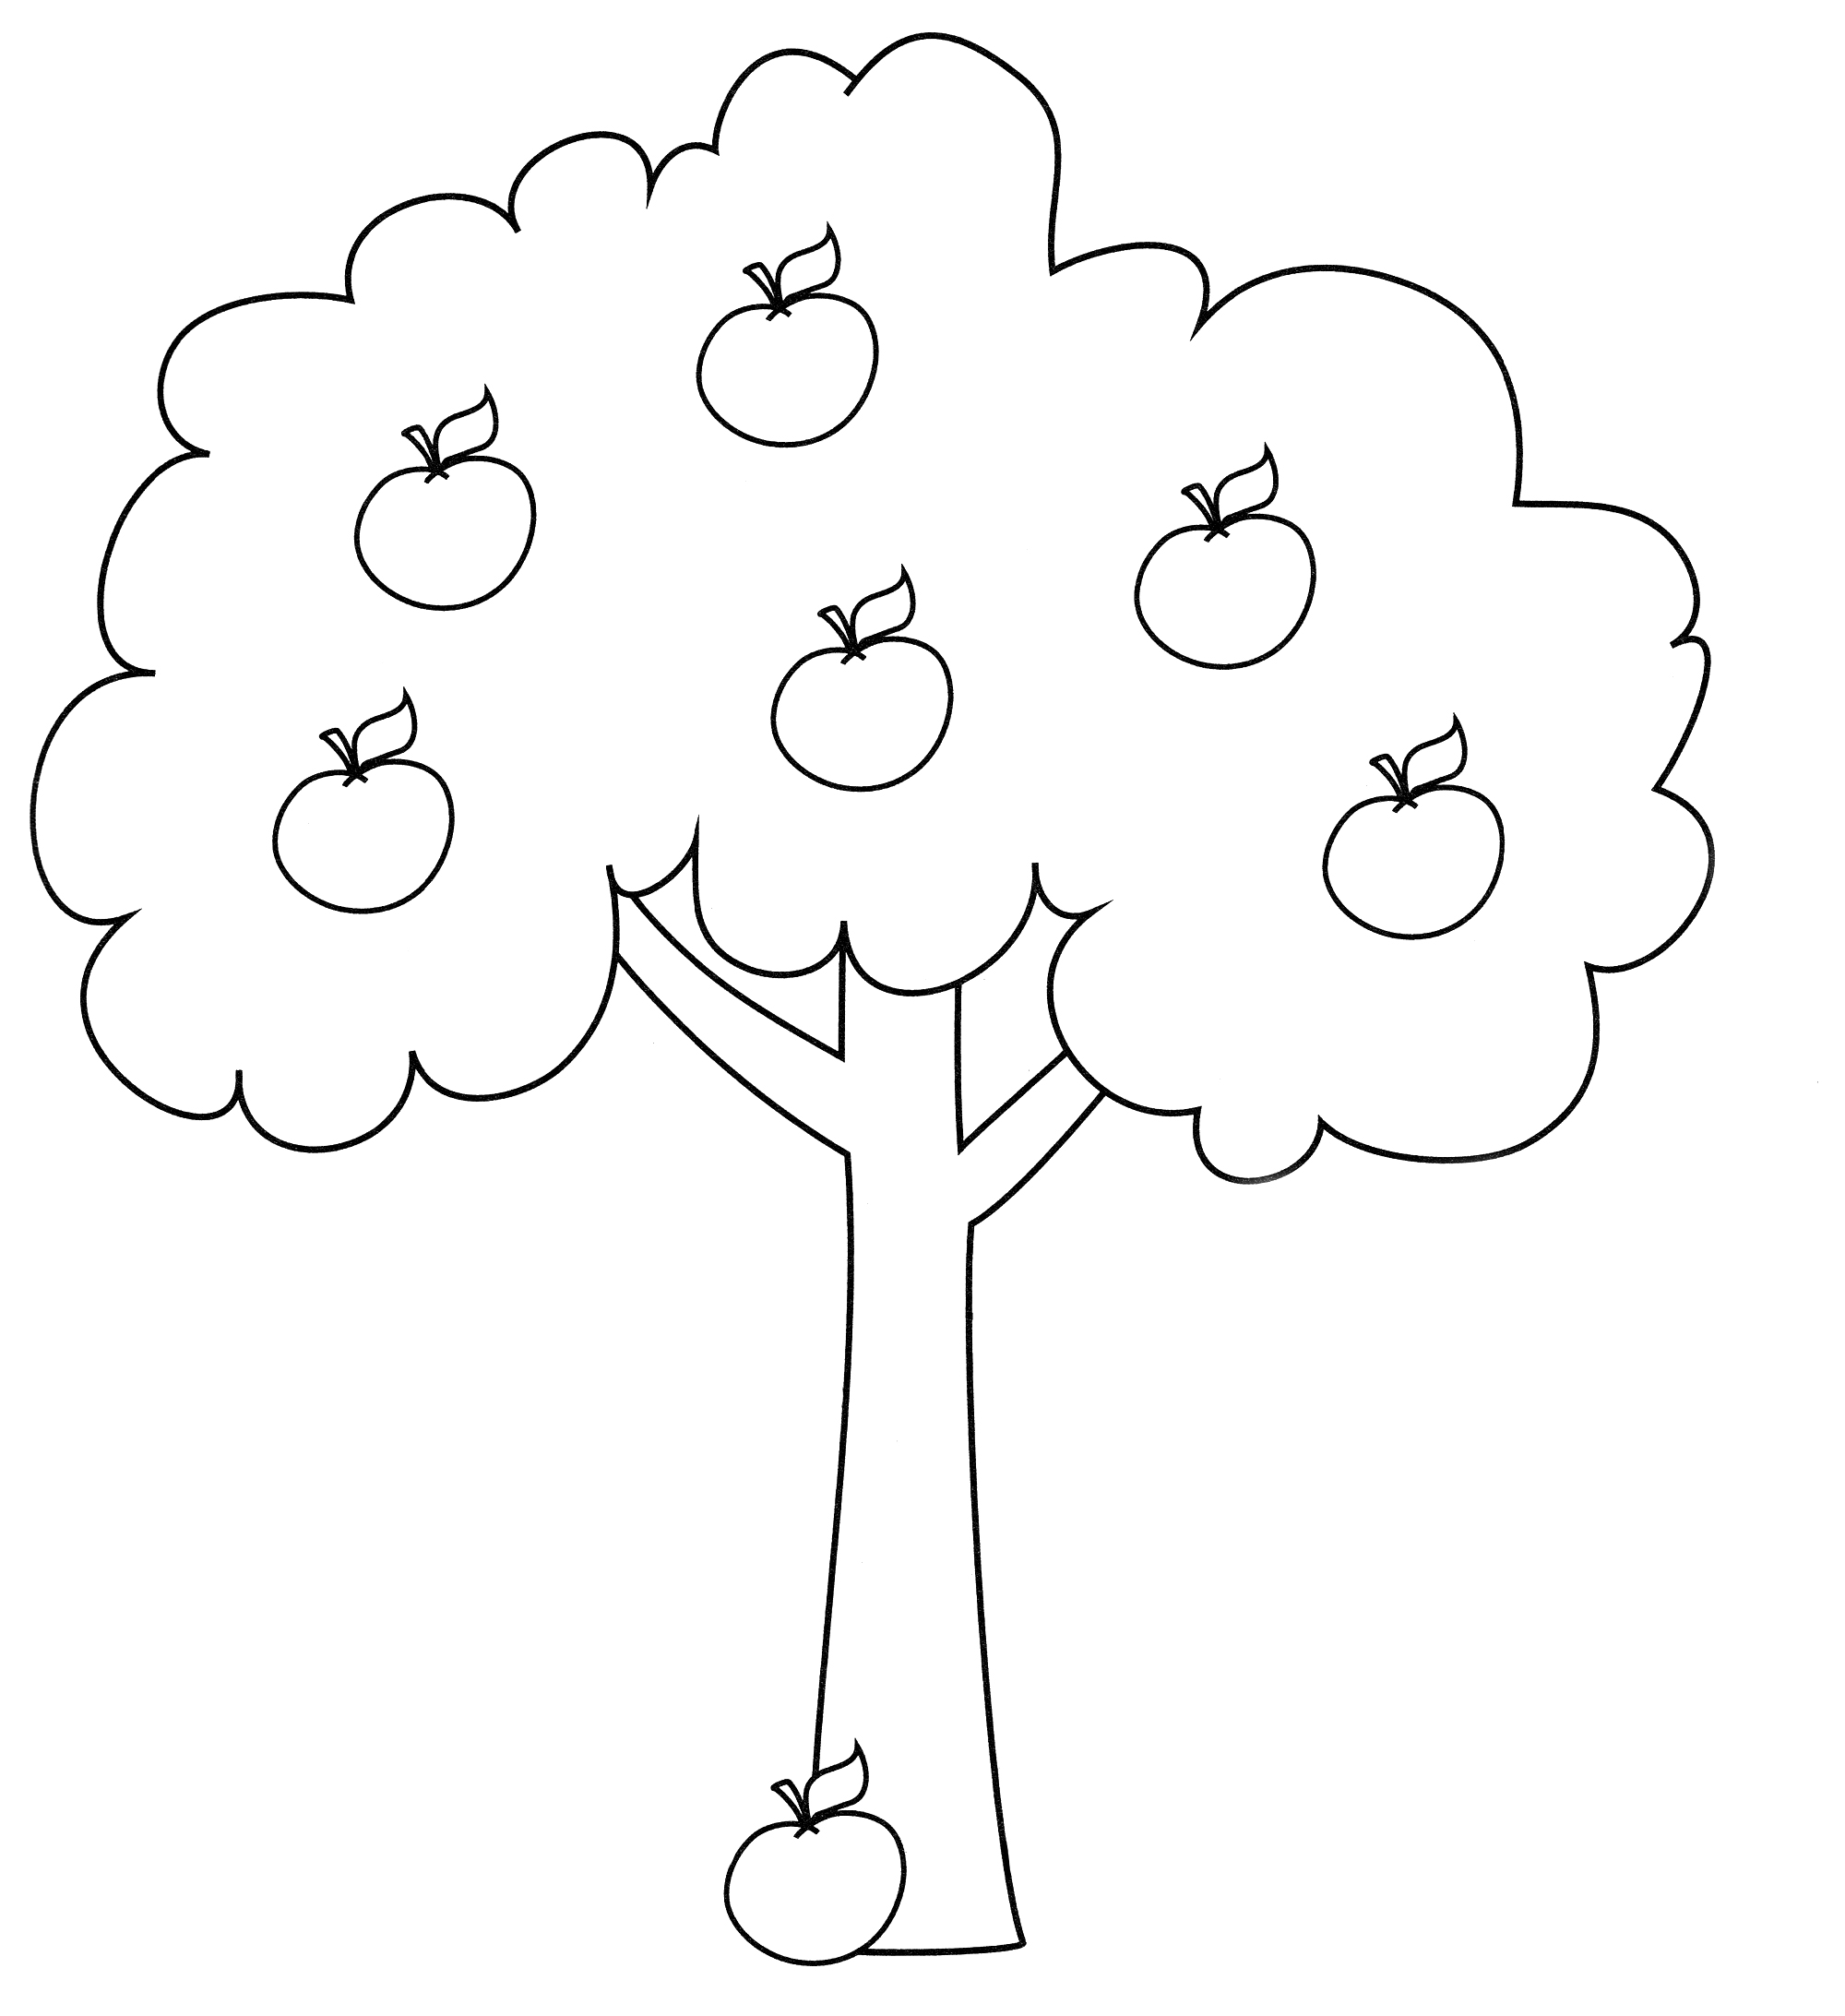 Раскраска Дерево с яблоками - распечатать бесплатно